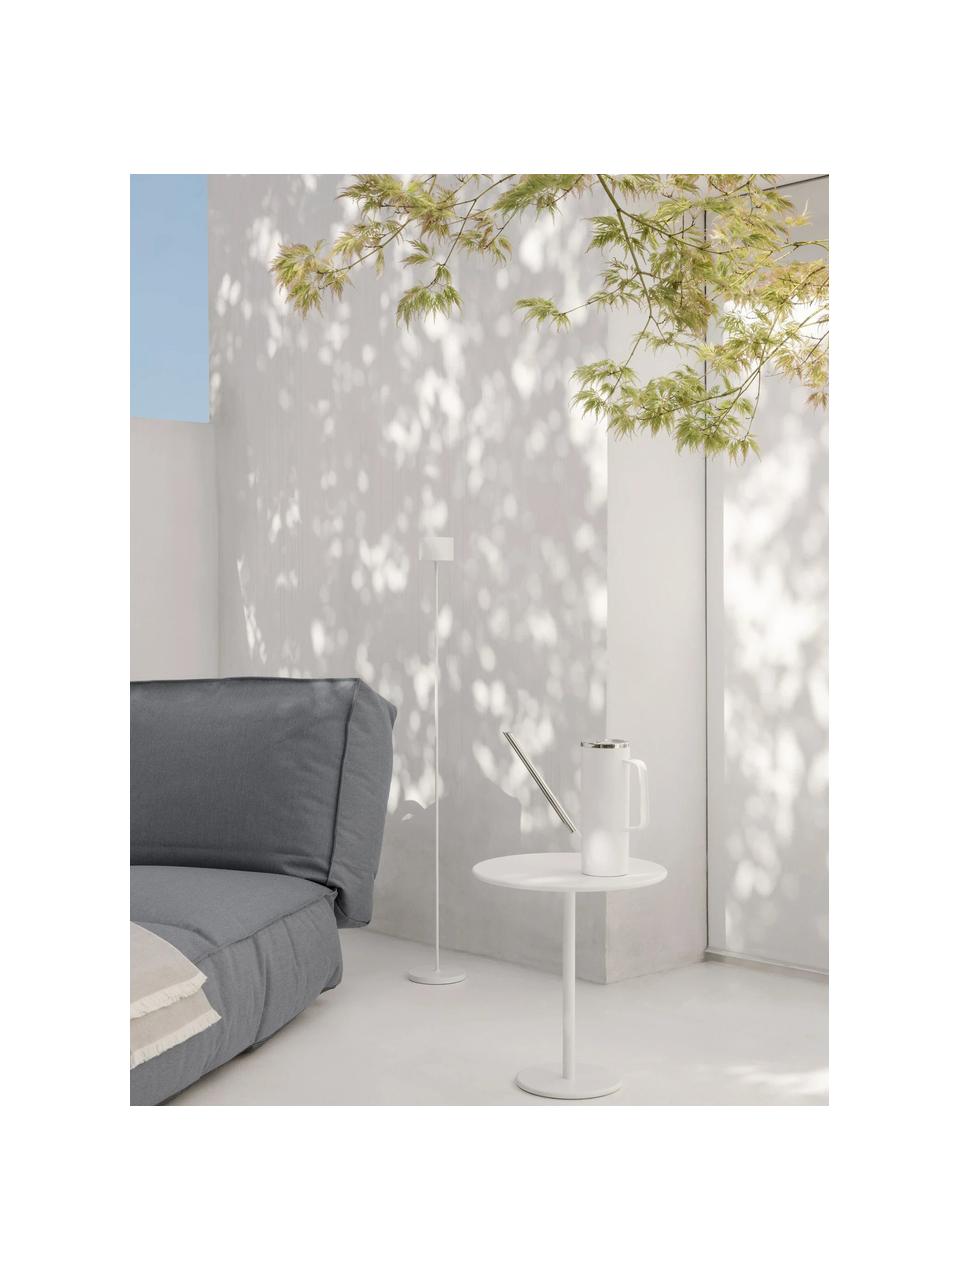 Table d'appoint ronde de jardin Stay, Aluminium, revêtement par poudre, Blanc, Ø 40 x haut. 45 cm